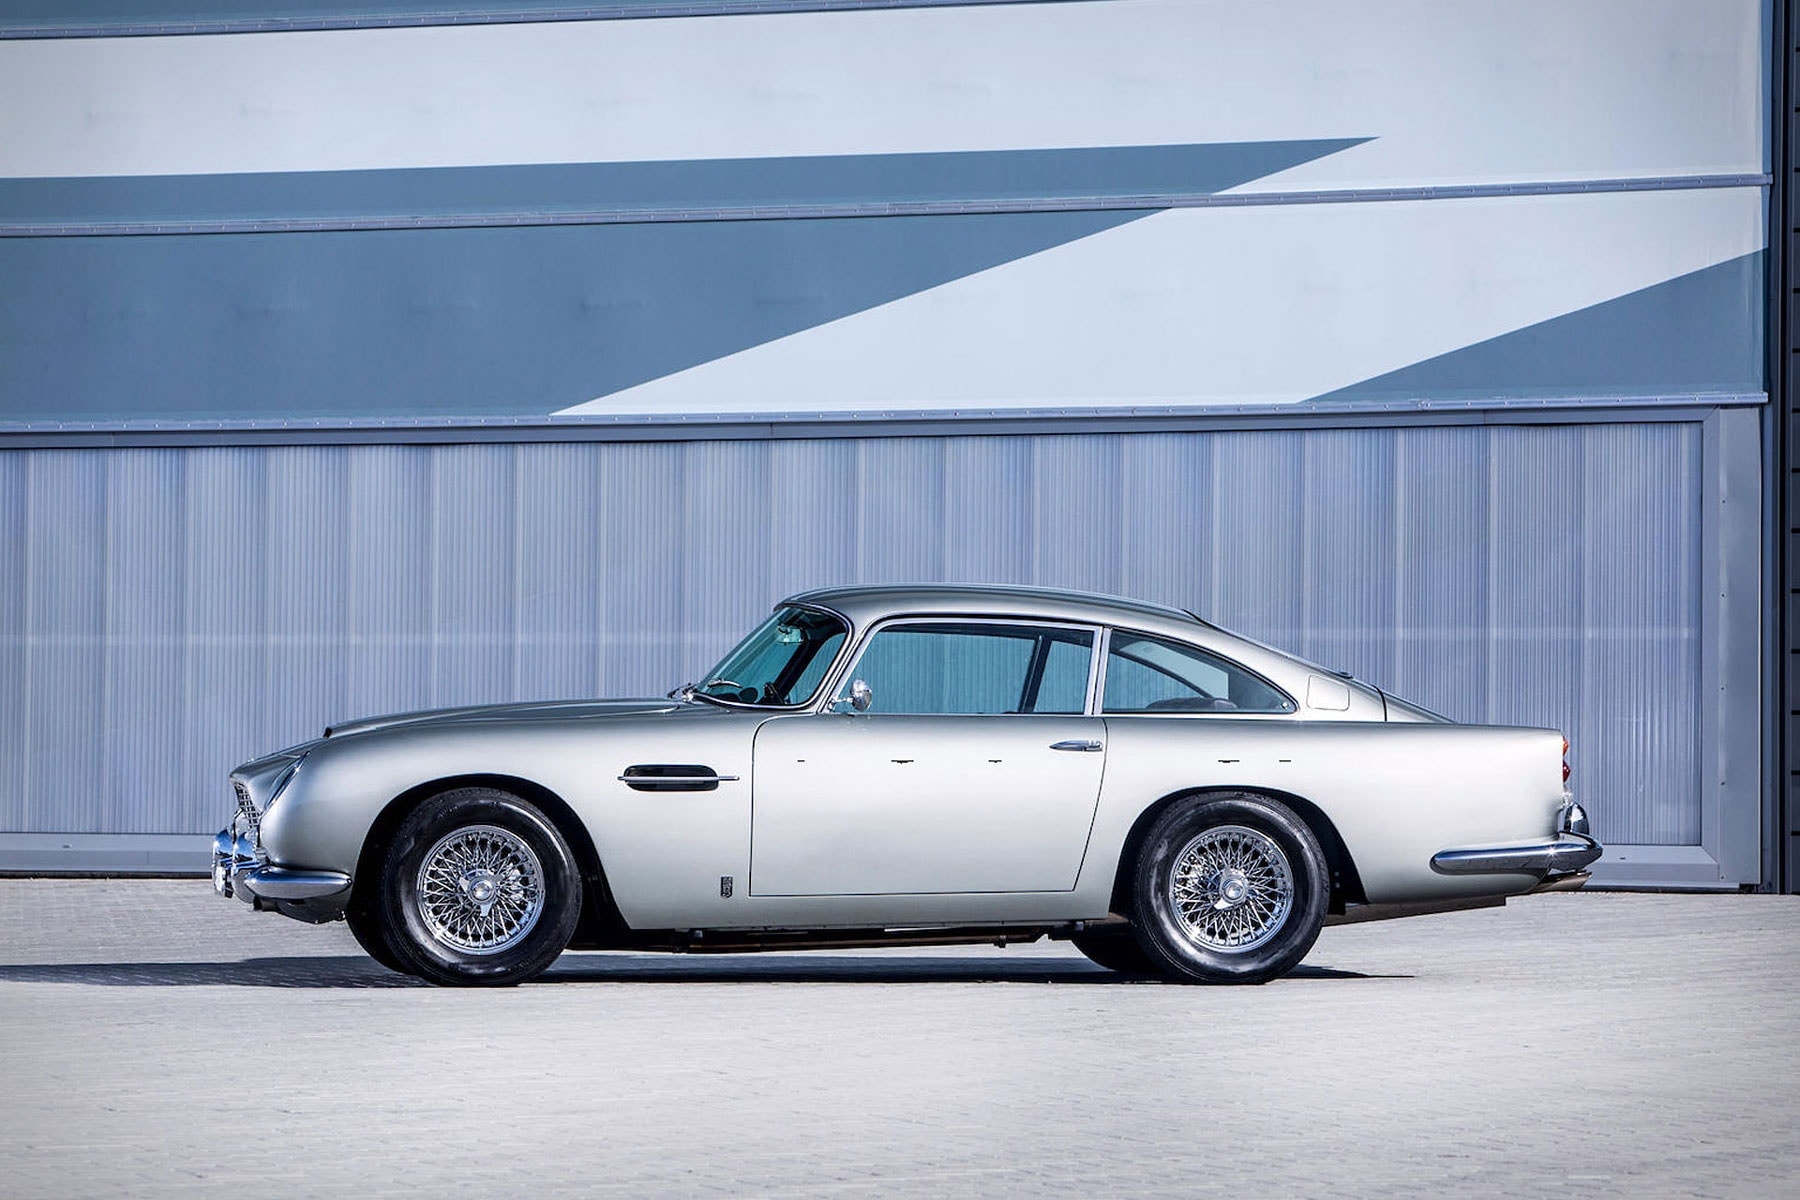 曾屬於 Paul McCartney 的 1964 年式樣 Aston Martin DB5 復古跑車即將拍賣